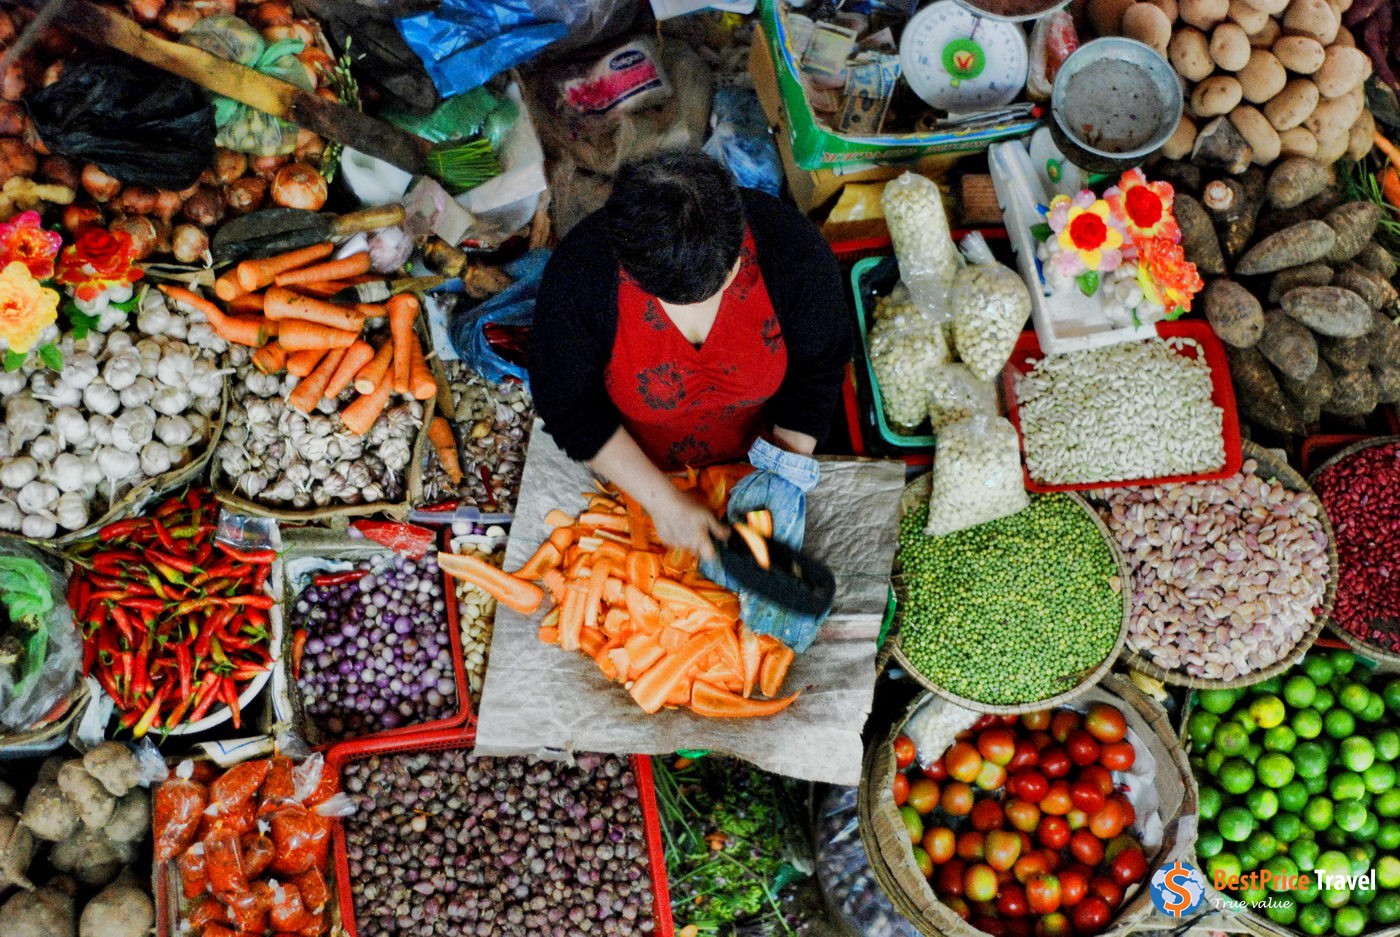 A Produce Vendor At The Market